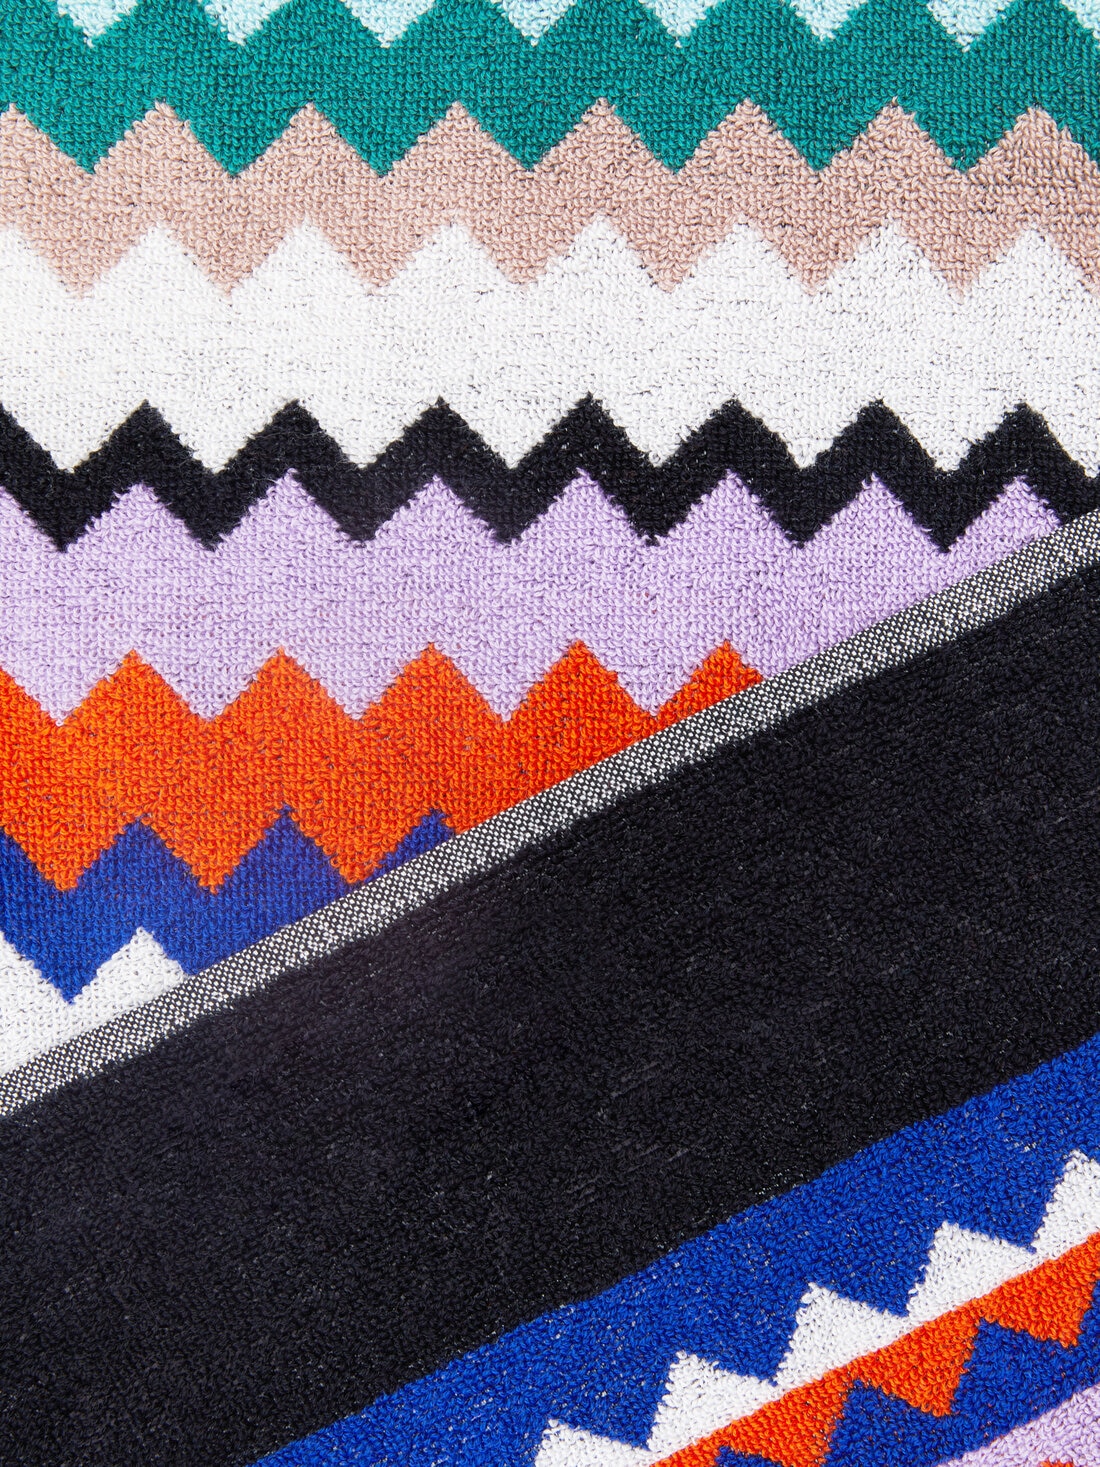 Riverbero 100x180 cm beach towel in zigzag cotton terry cloth, Multicoloured  - 8053147105291 - 2